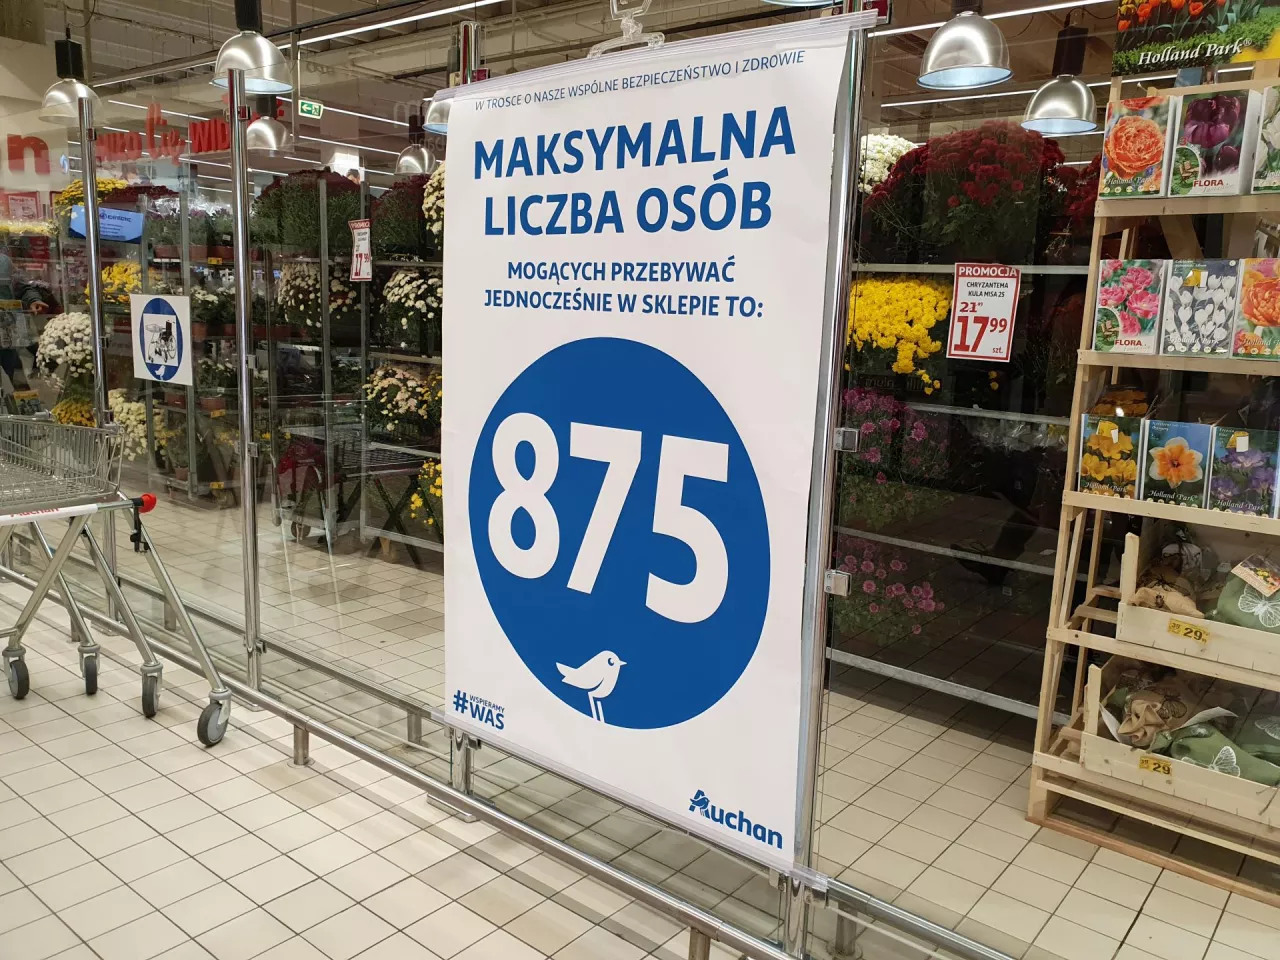 Limity klientów w sklepach to fikcja (fot. wiadomoscihandlowe.pl)